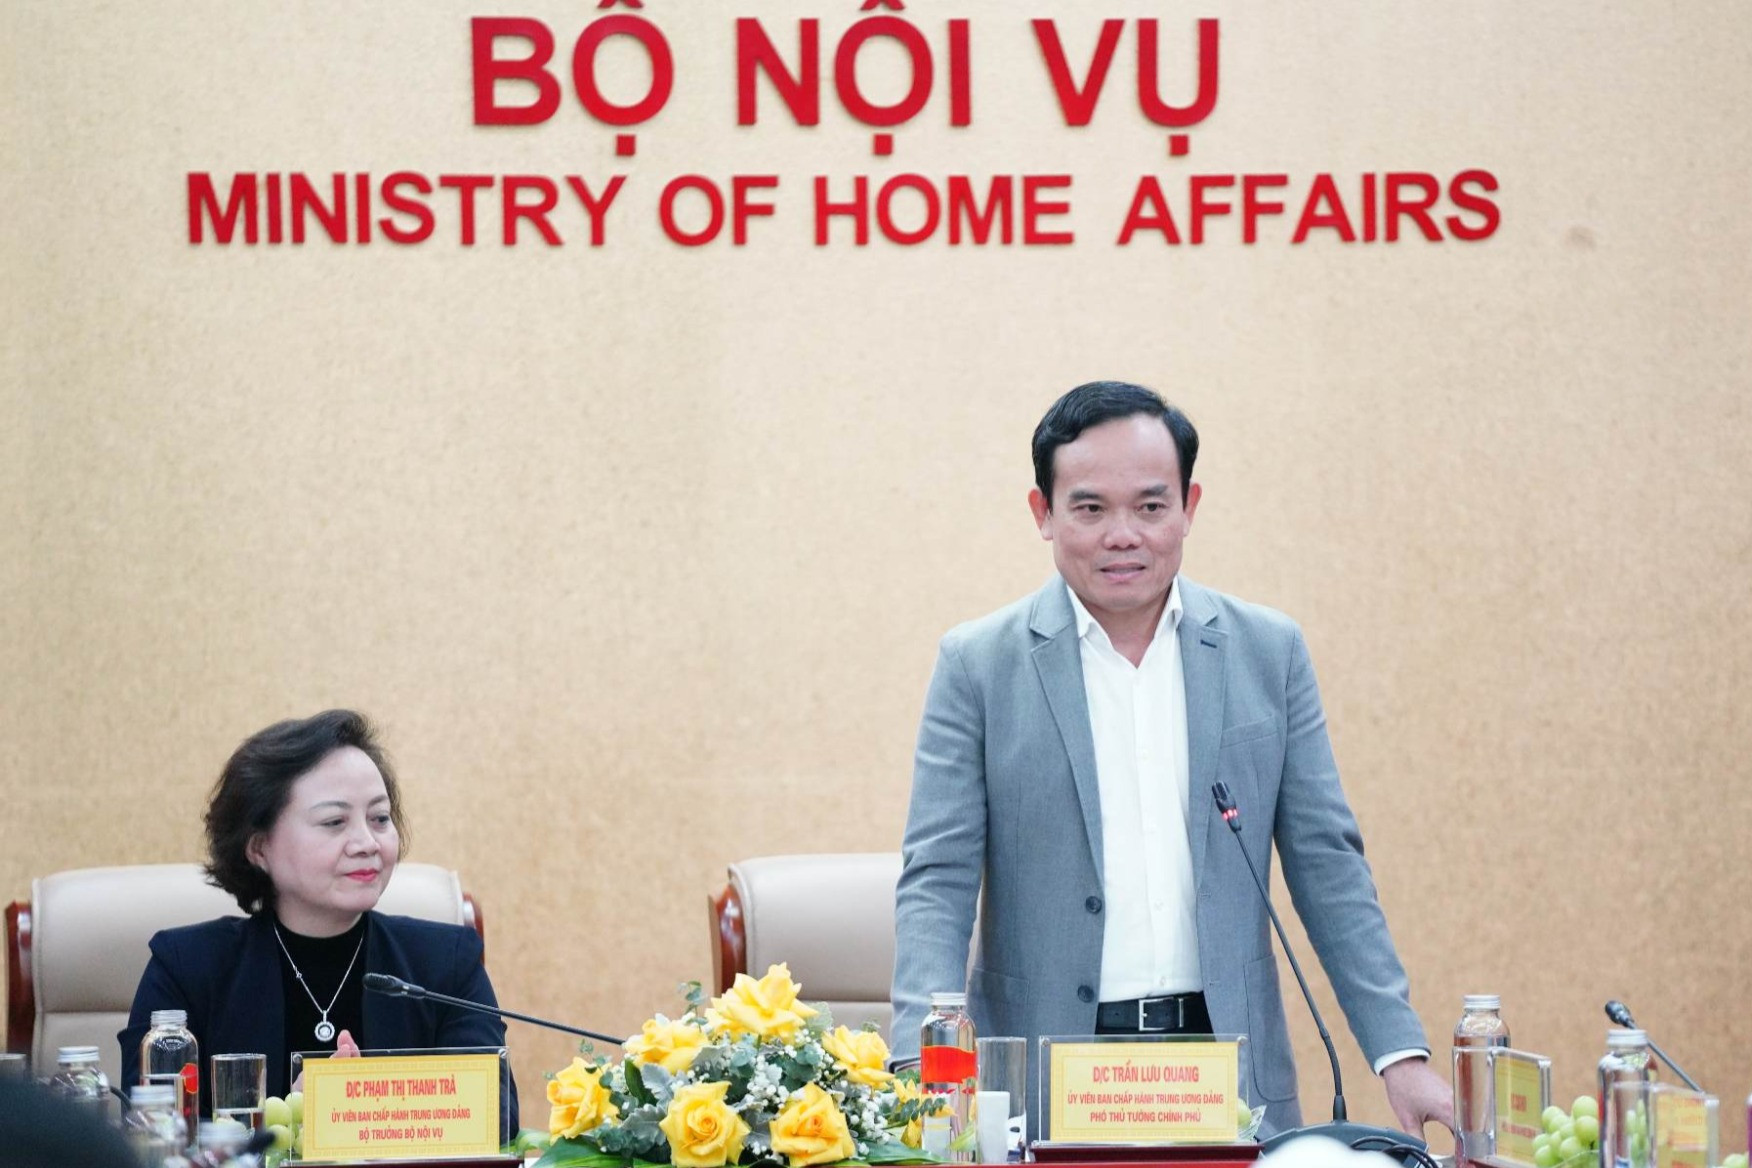 Phó Thủ tướng Trần Lưu Quang hứa 'chung lưng đấu cật' với Bộ Nội vụ